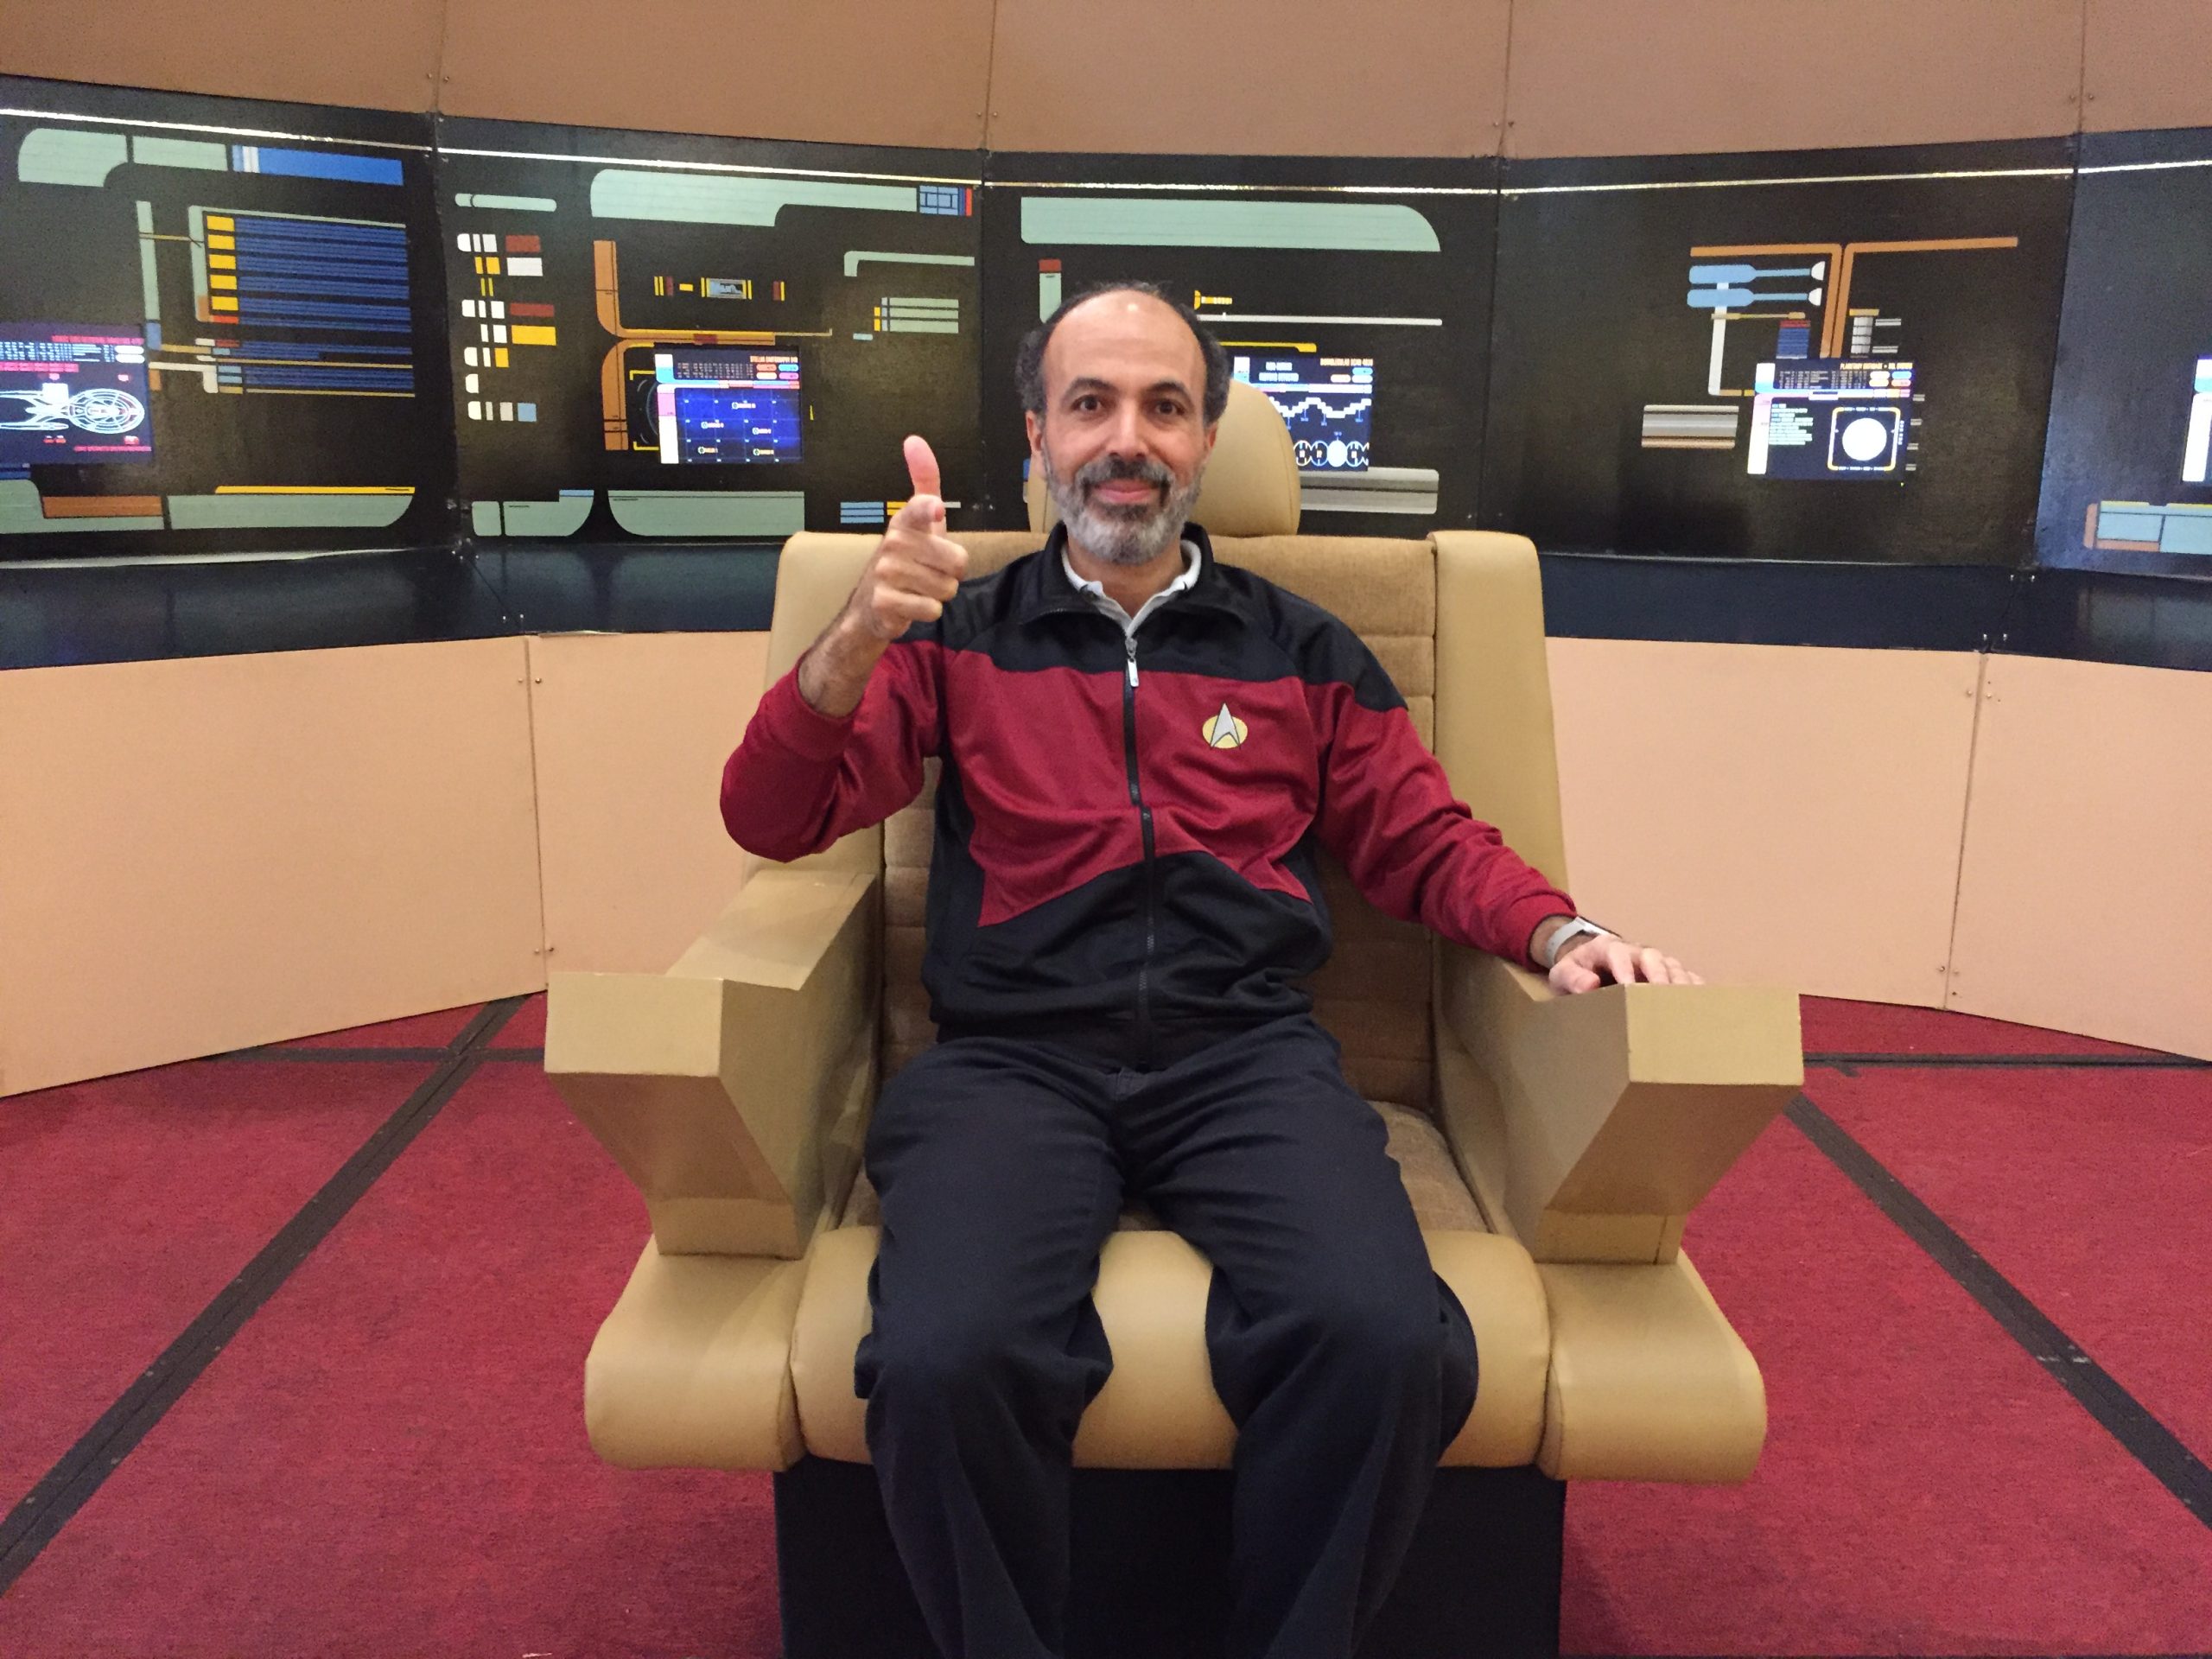 Dr. Mohamed Noor in Star Trek gear